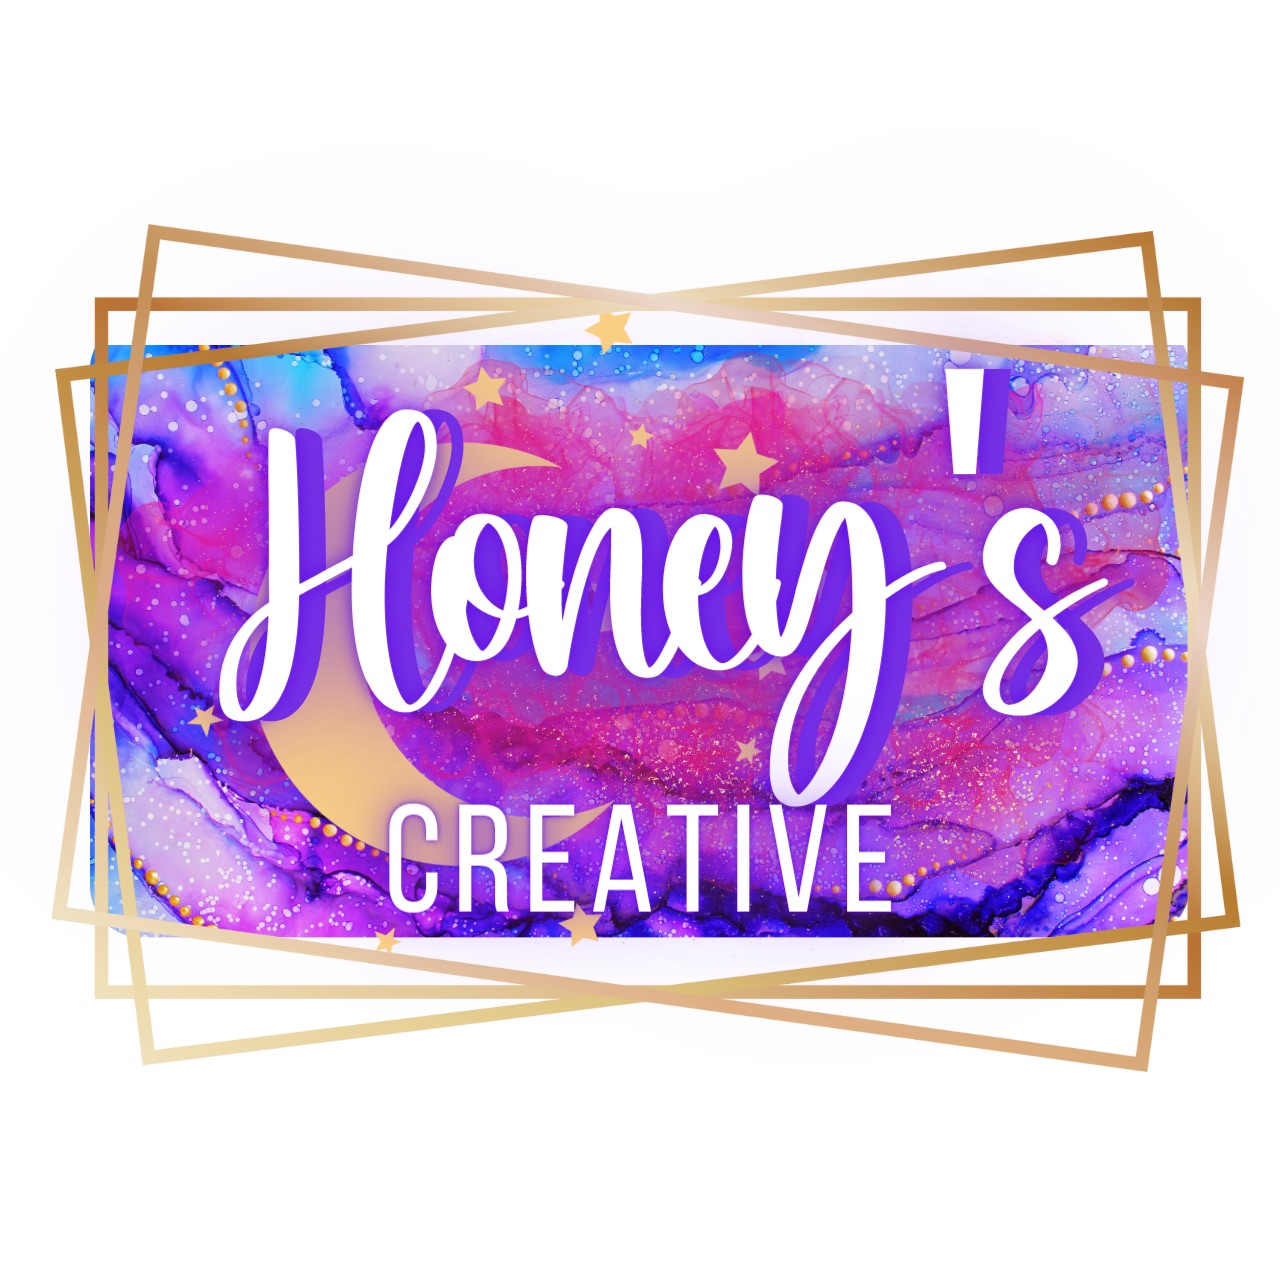 Honey’s Creative